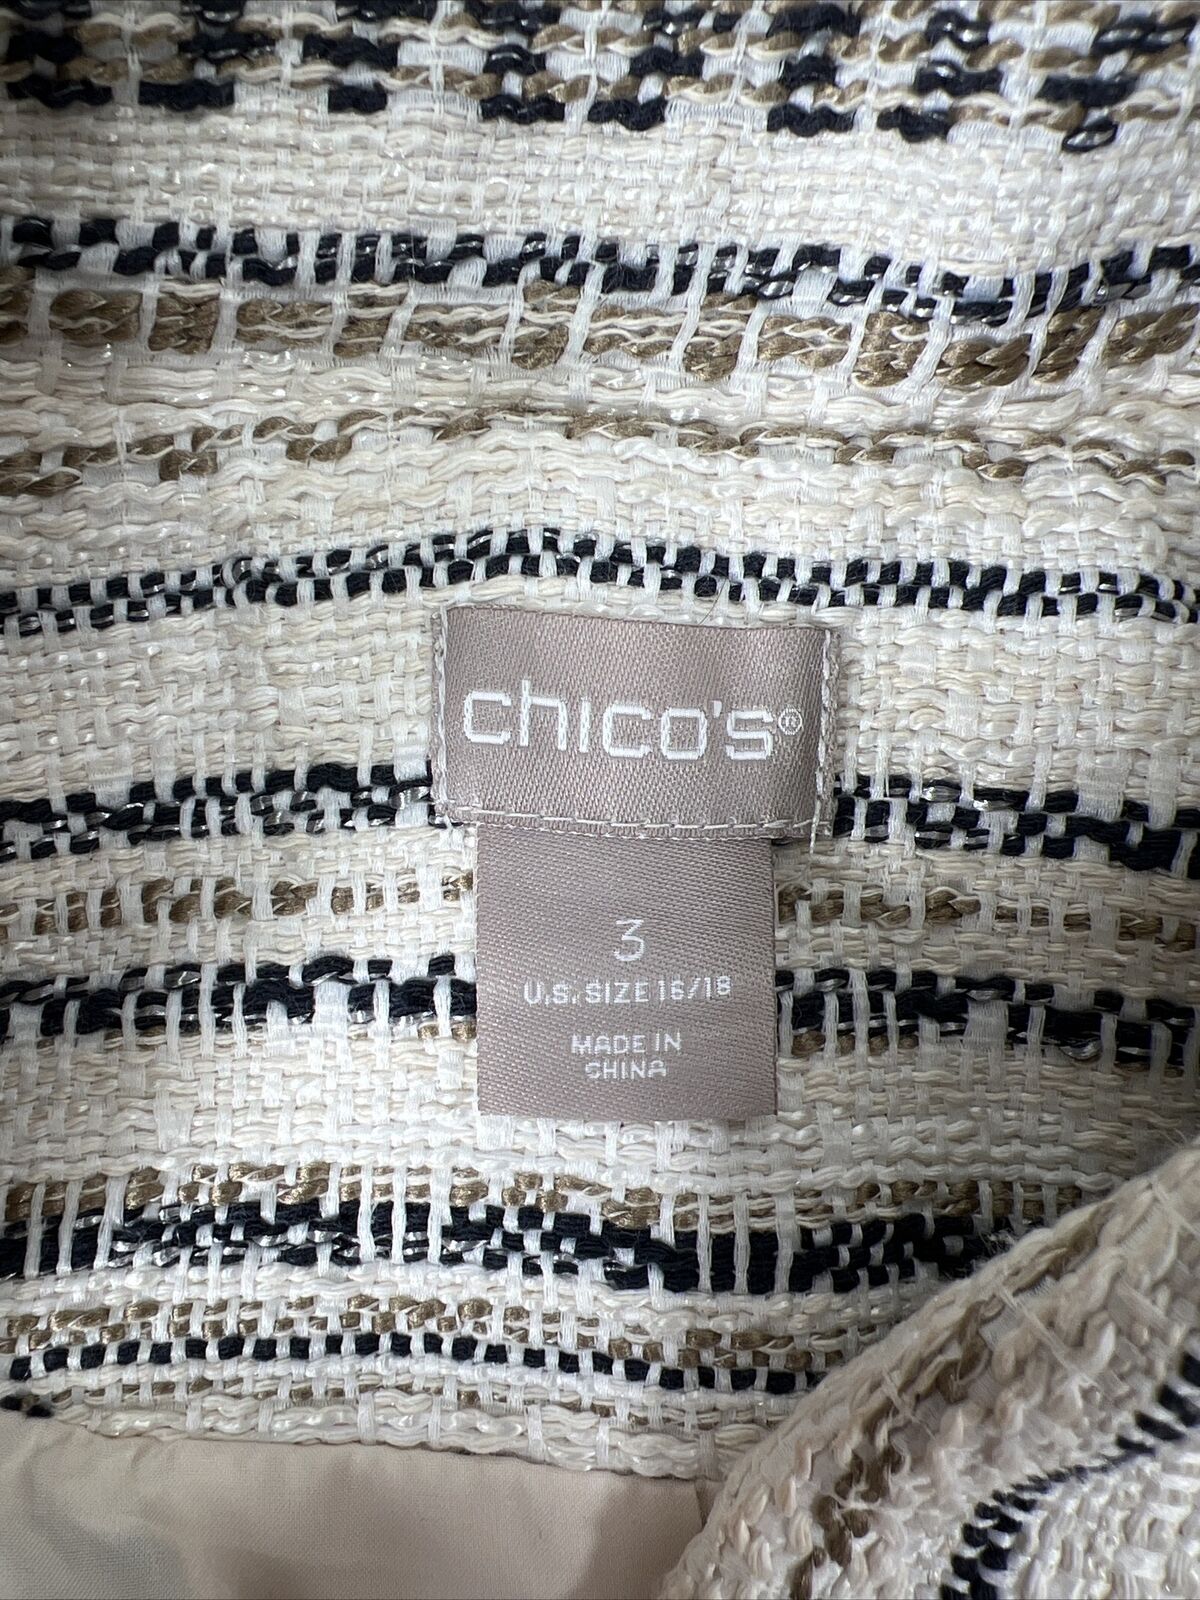 Chico's Chaqueta con cremallera completa de tweed texturizado color marfil para mujer - 3 US 16/18